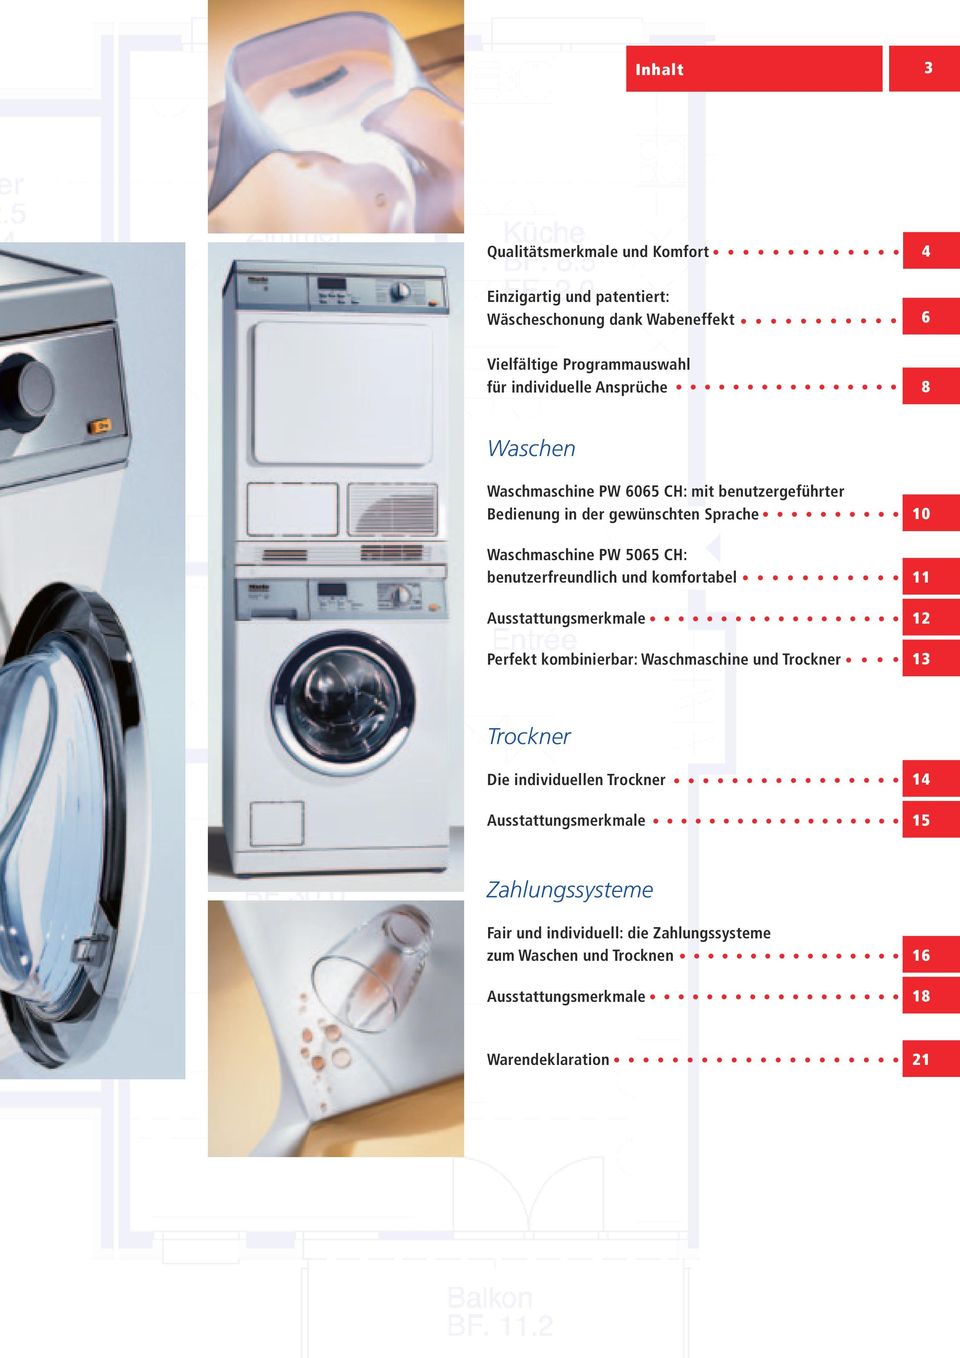 benutzerfreundlich und komfortabel 11 Ausstattungsmerkmale 12 Perfekt kombinierbar: Waschmaschine und Trockner 13 Trockner Die individuellen